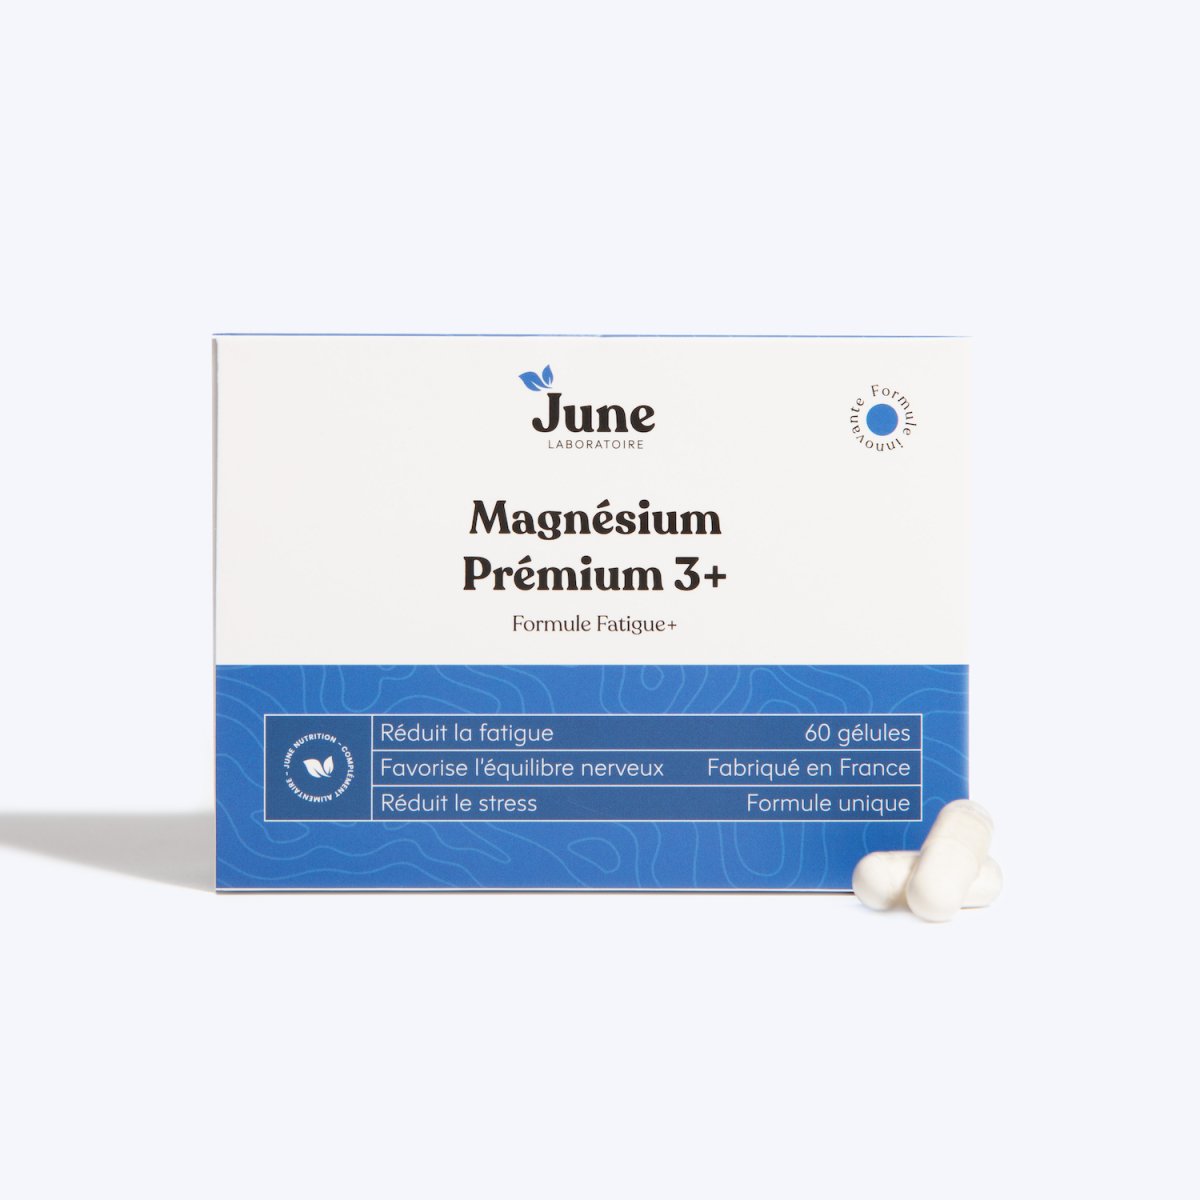 Magnésium Premium 3+ | Anti-Fatigue | 60 gélules - June Laboratoire